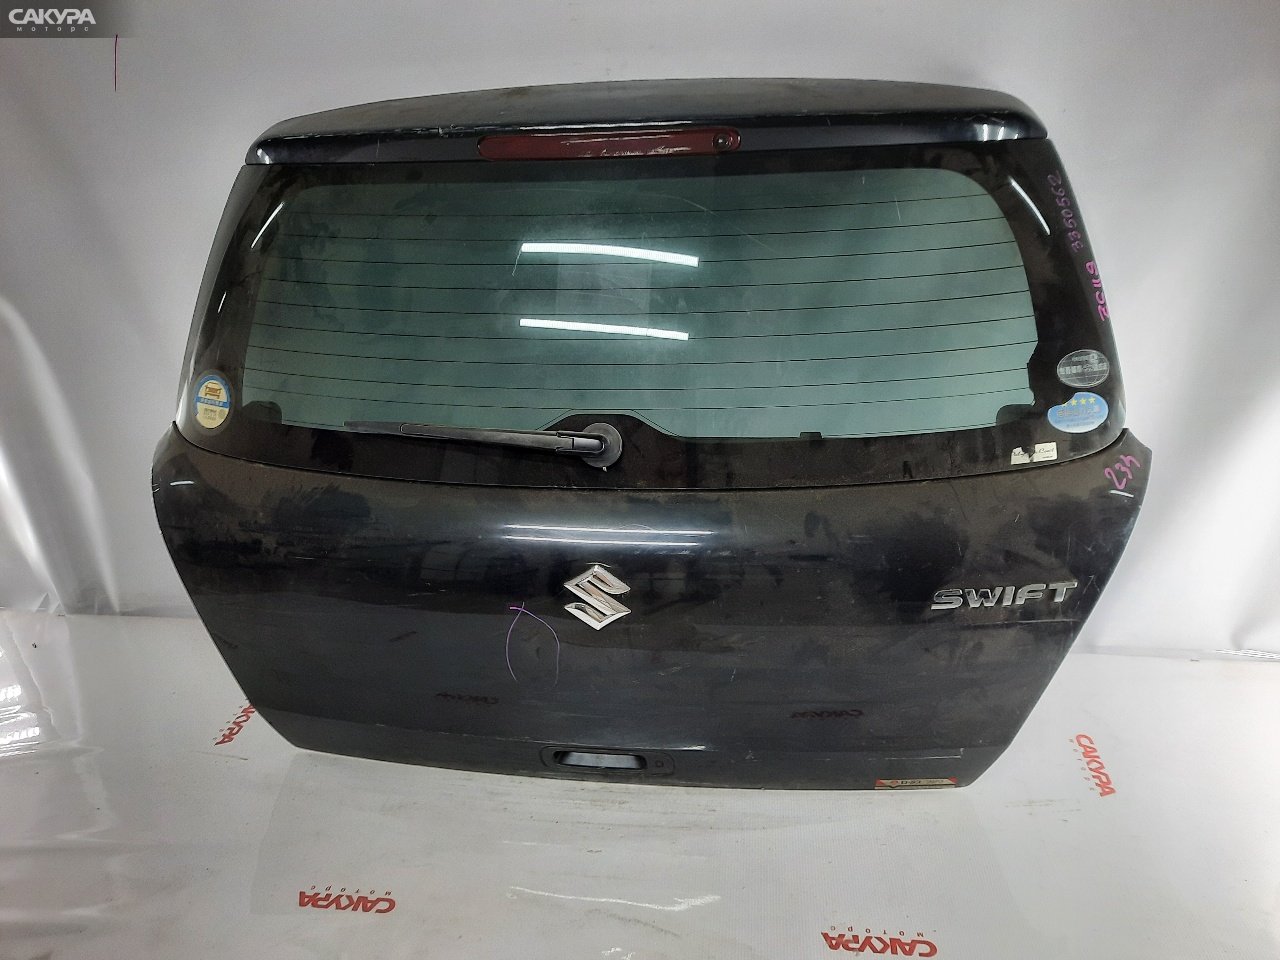 Дверь задняя багажника Suzuki Swift ZC11S M13A: купить в Сакура Красноярск.